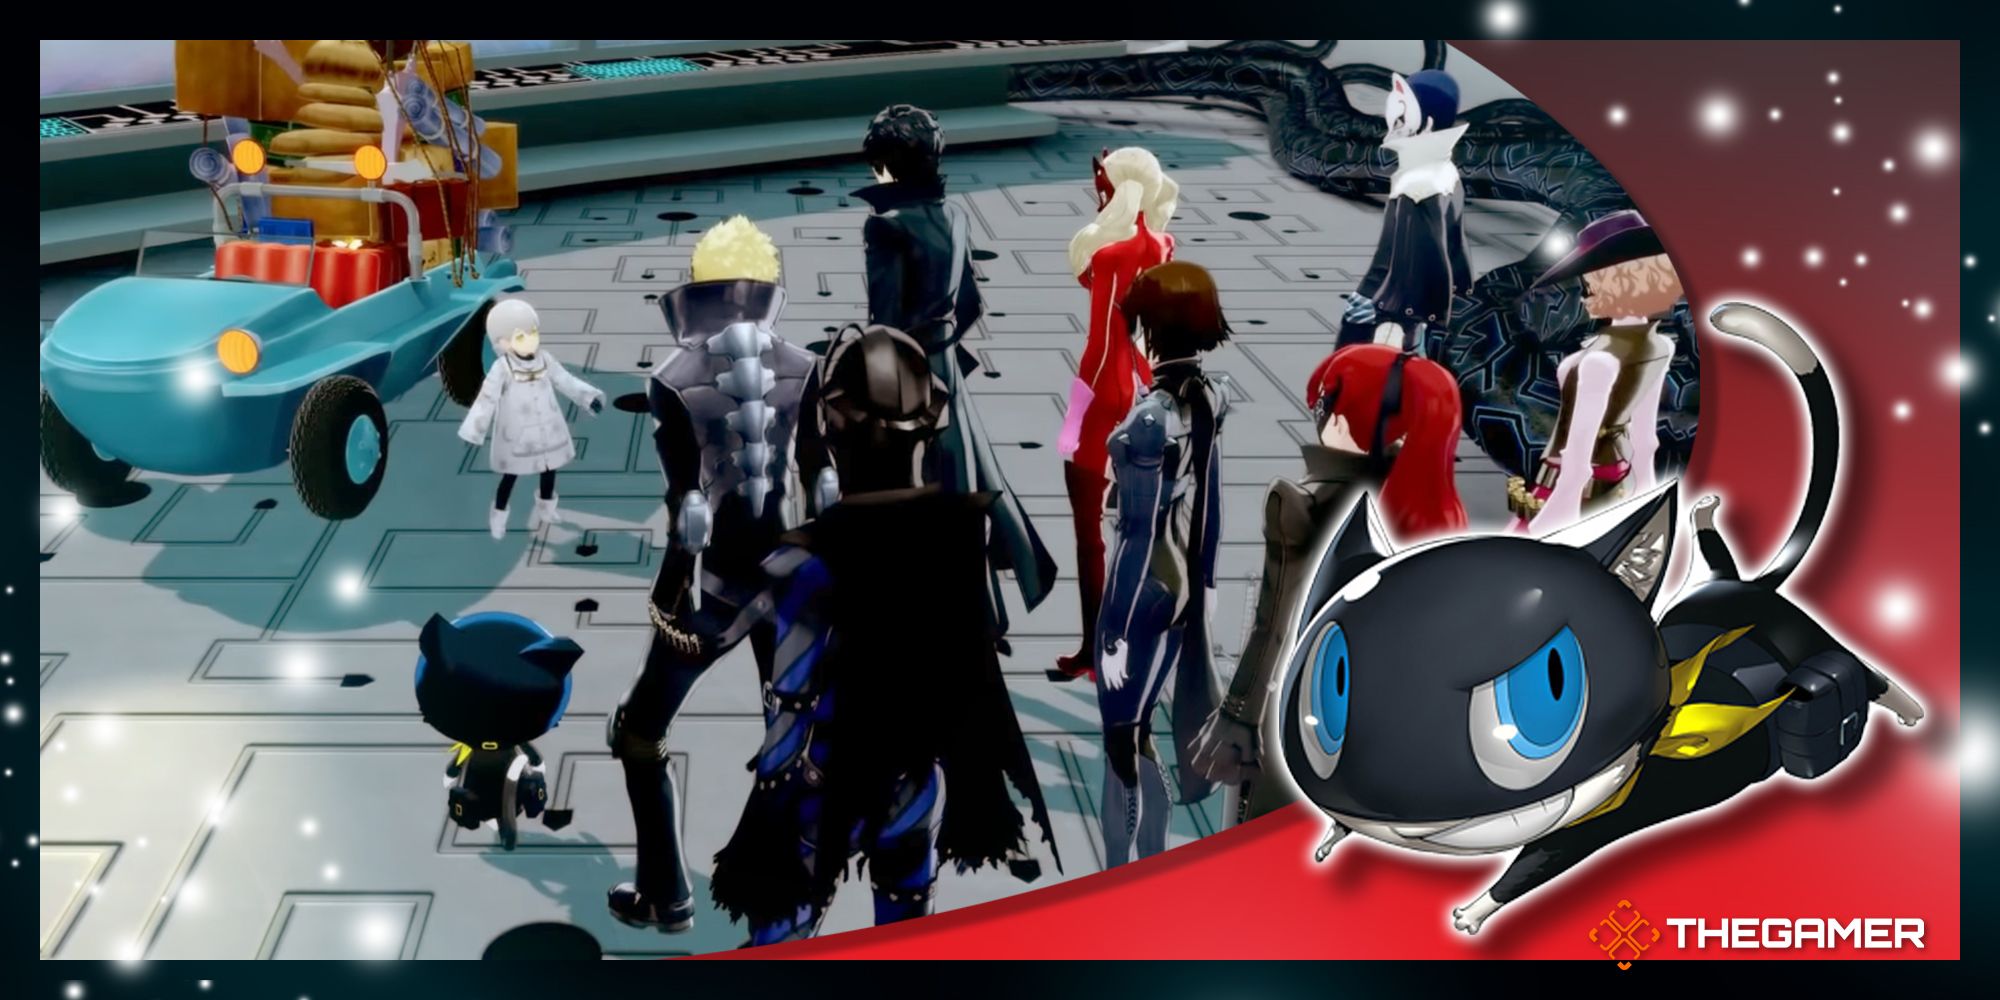 Screenshot and art from Persona 5 Royal.